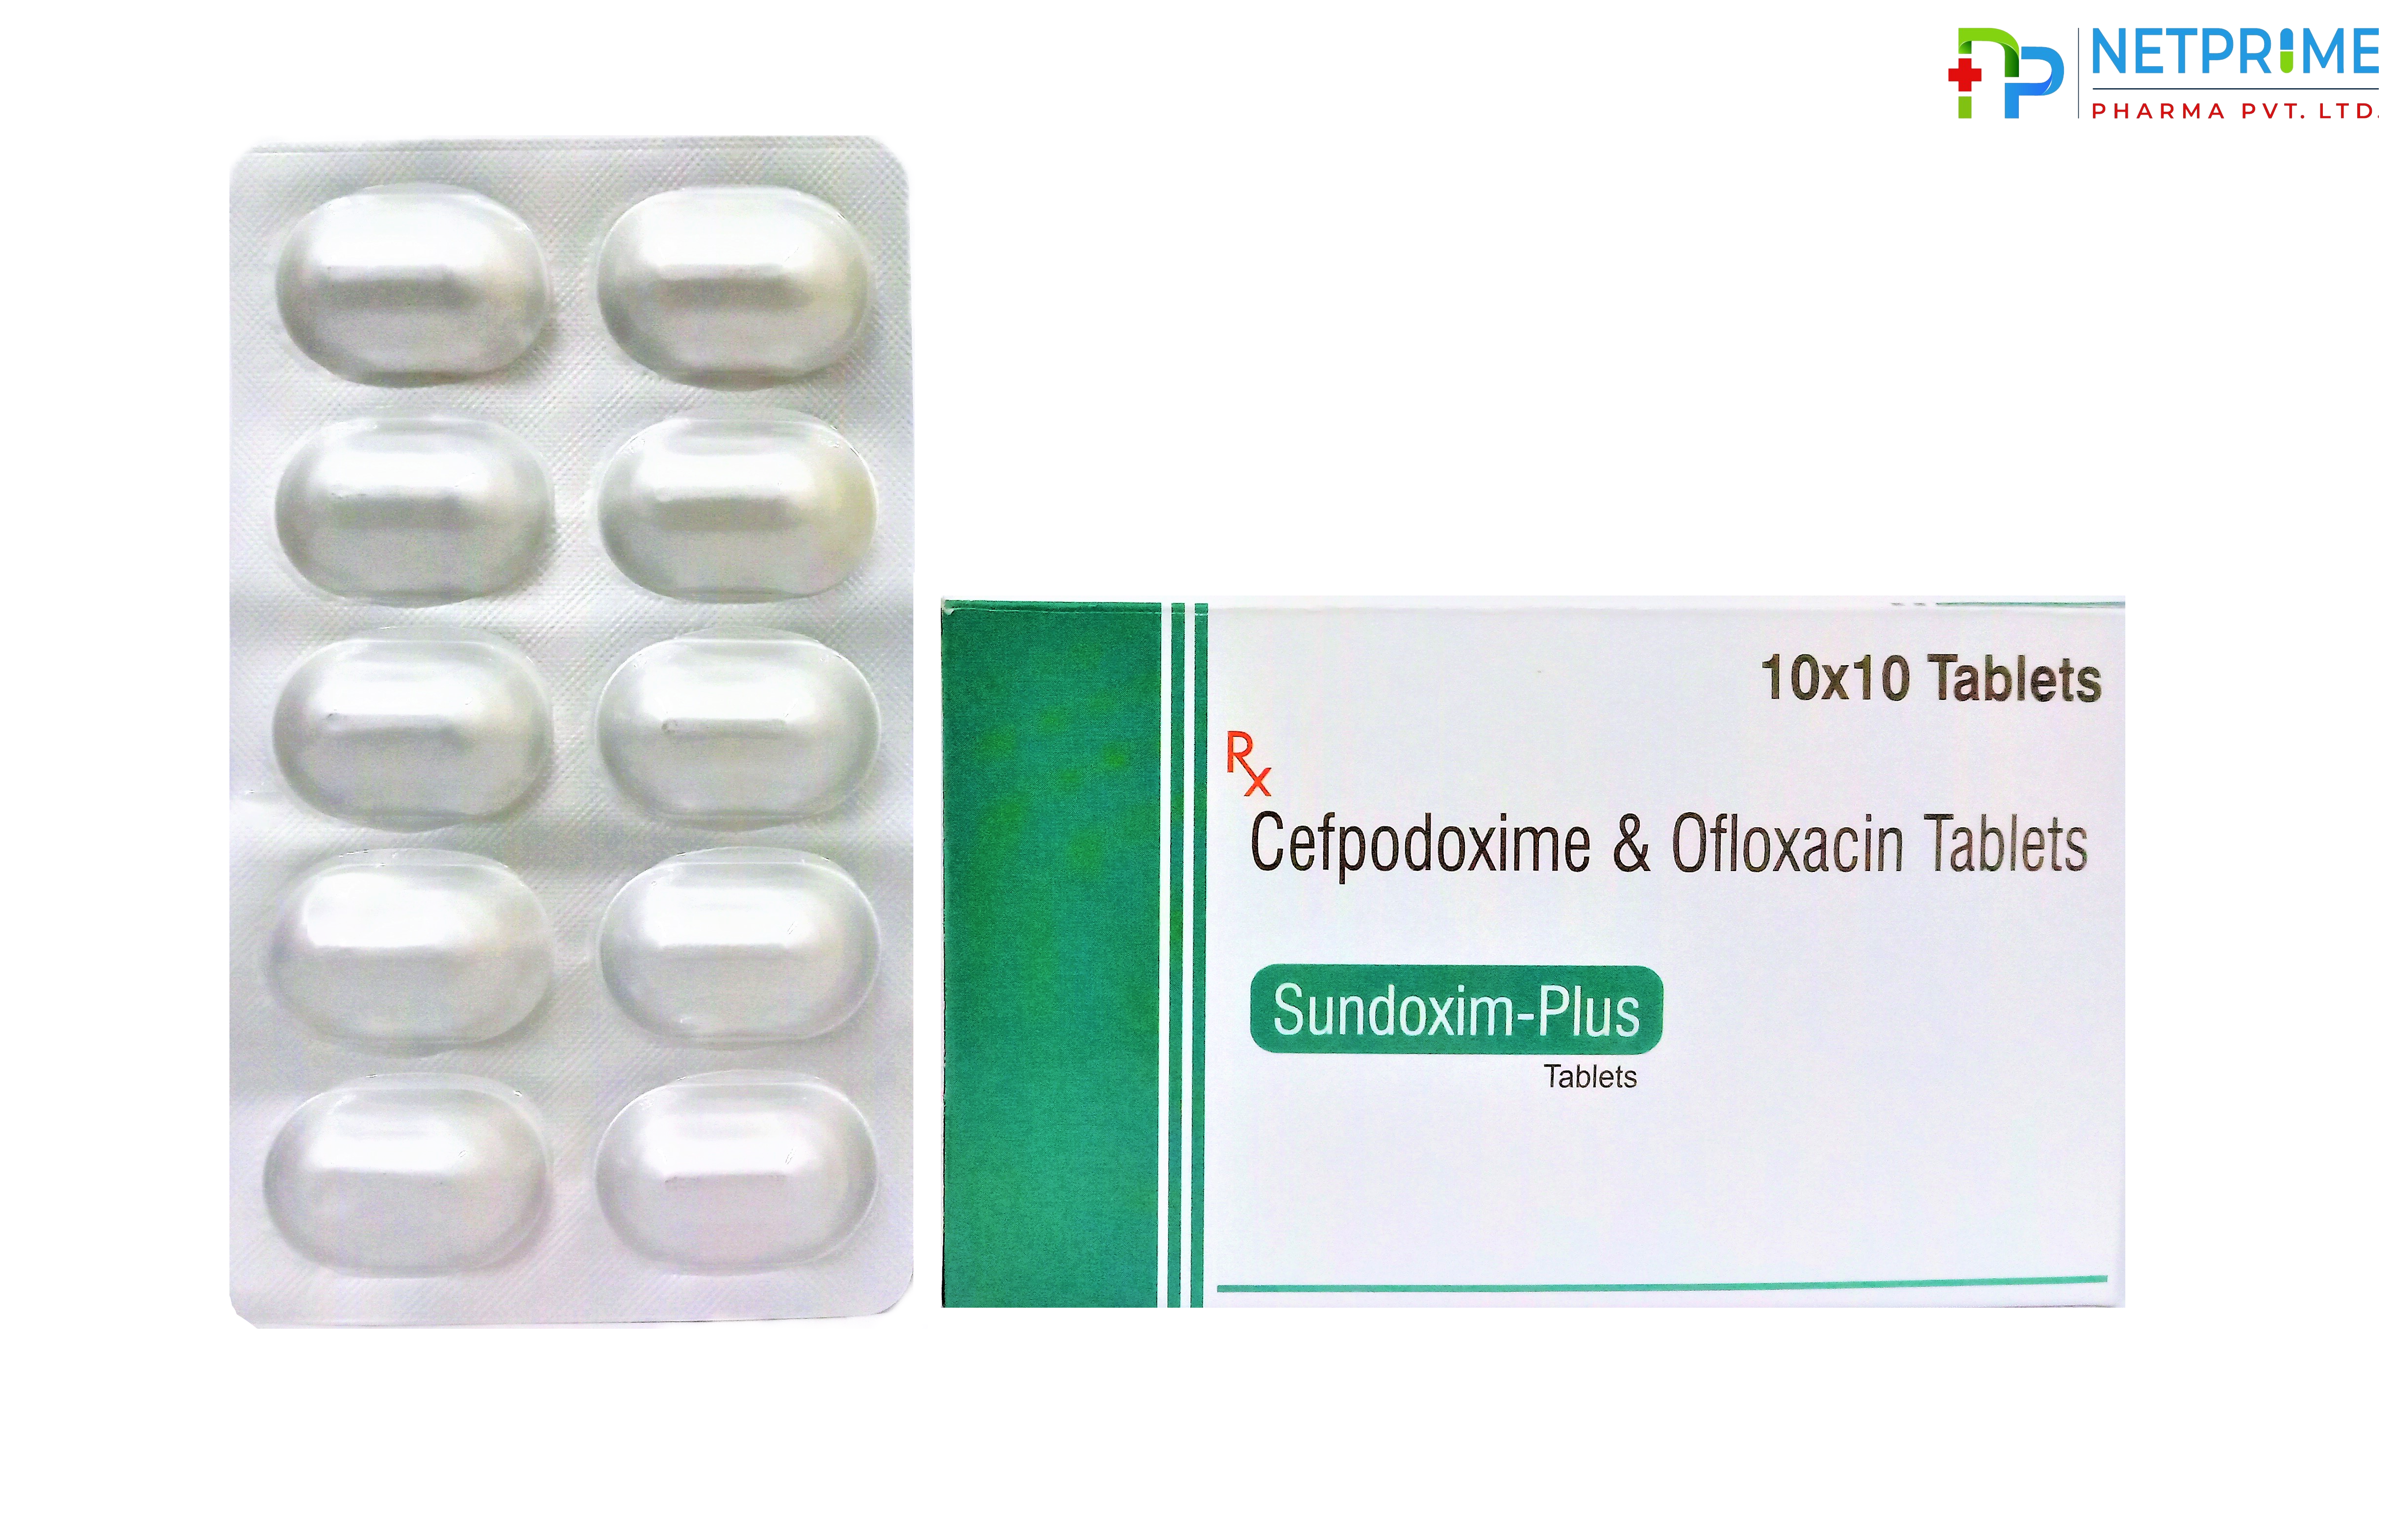 Cefpodoxime 200mg and Ofloxacin 200mg Tablets